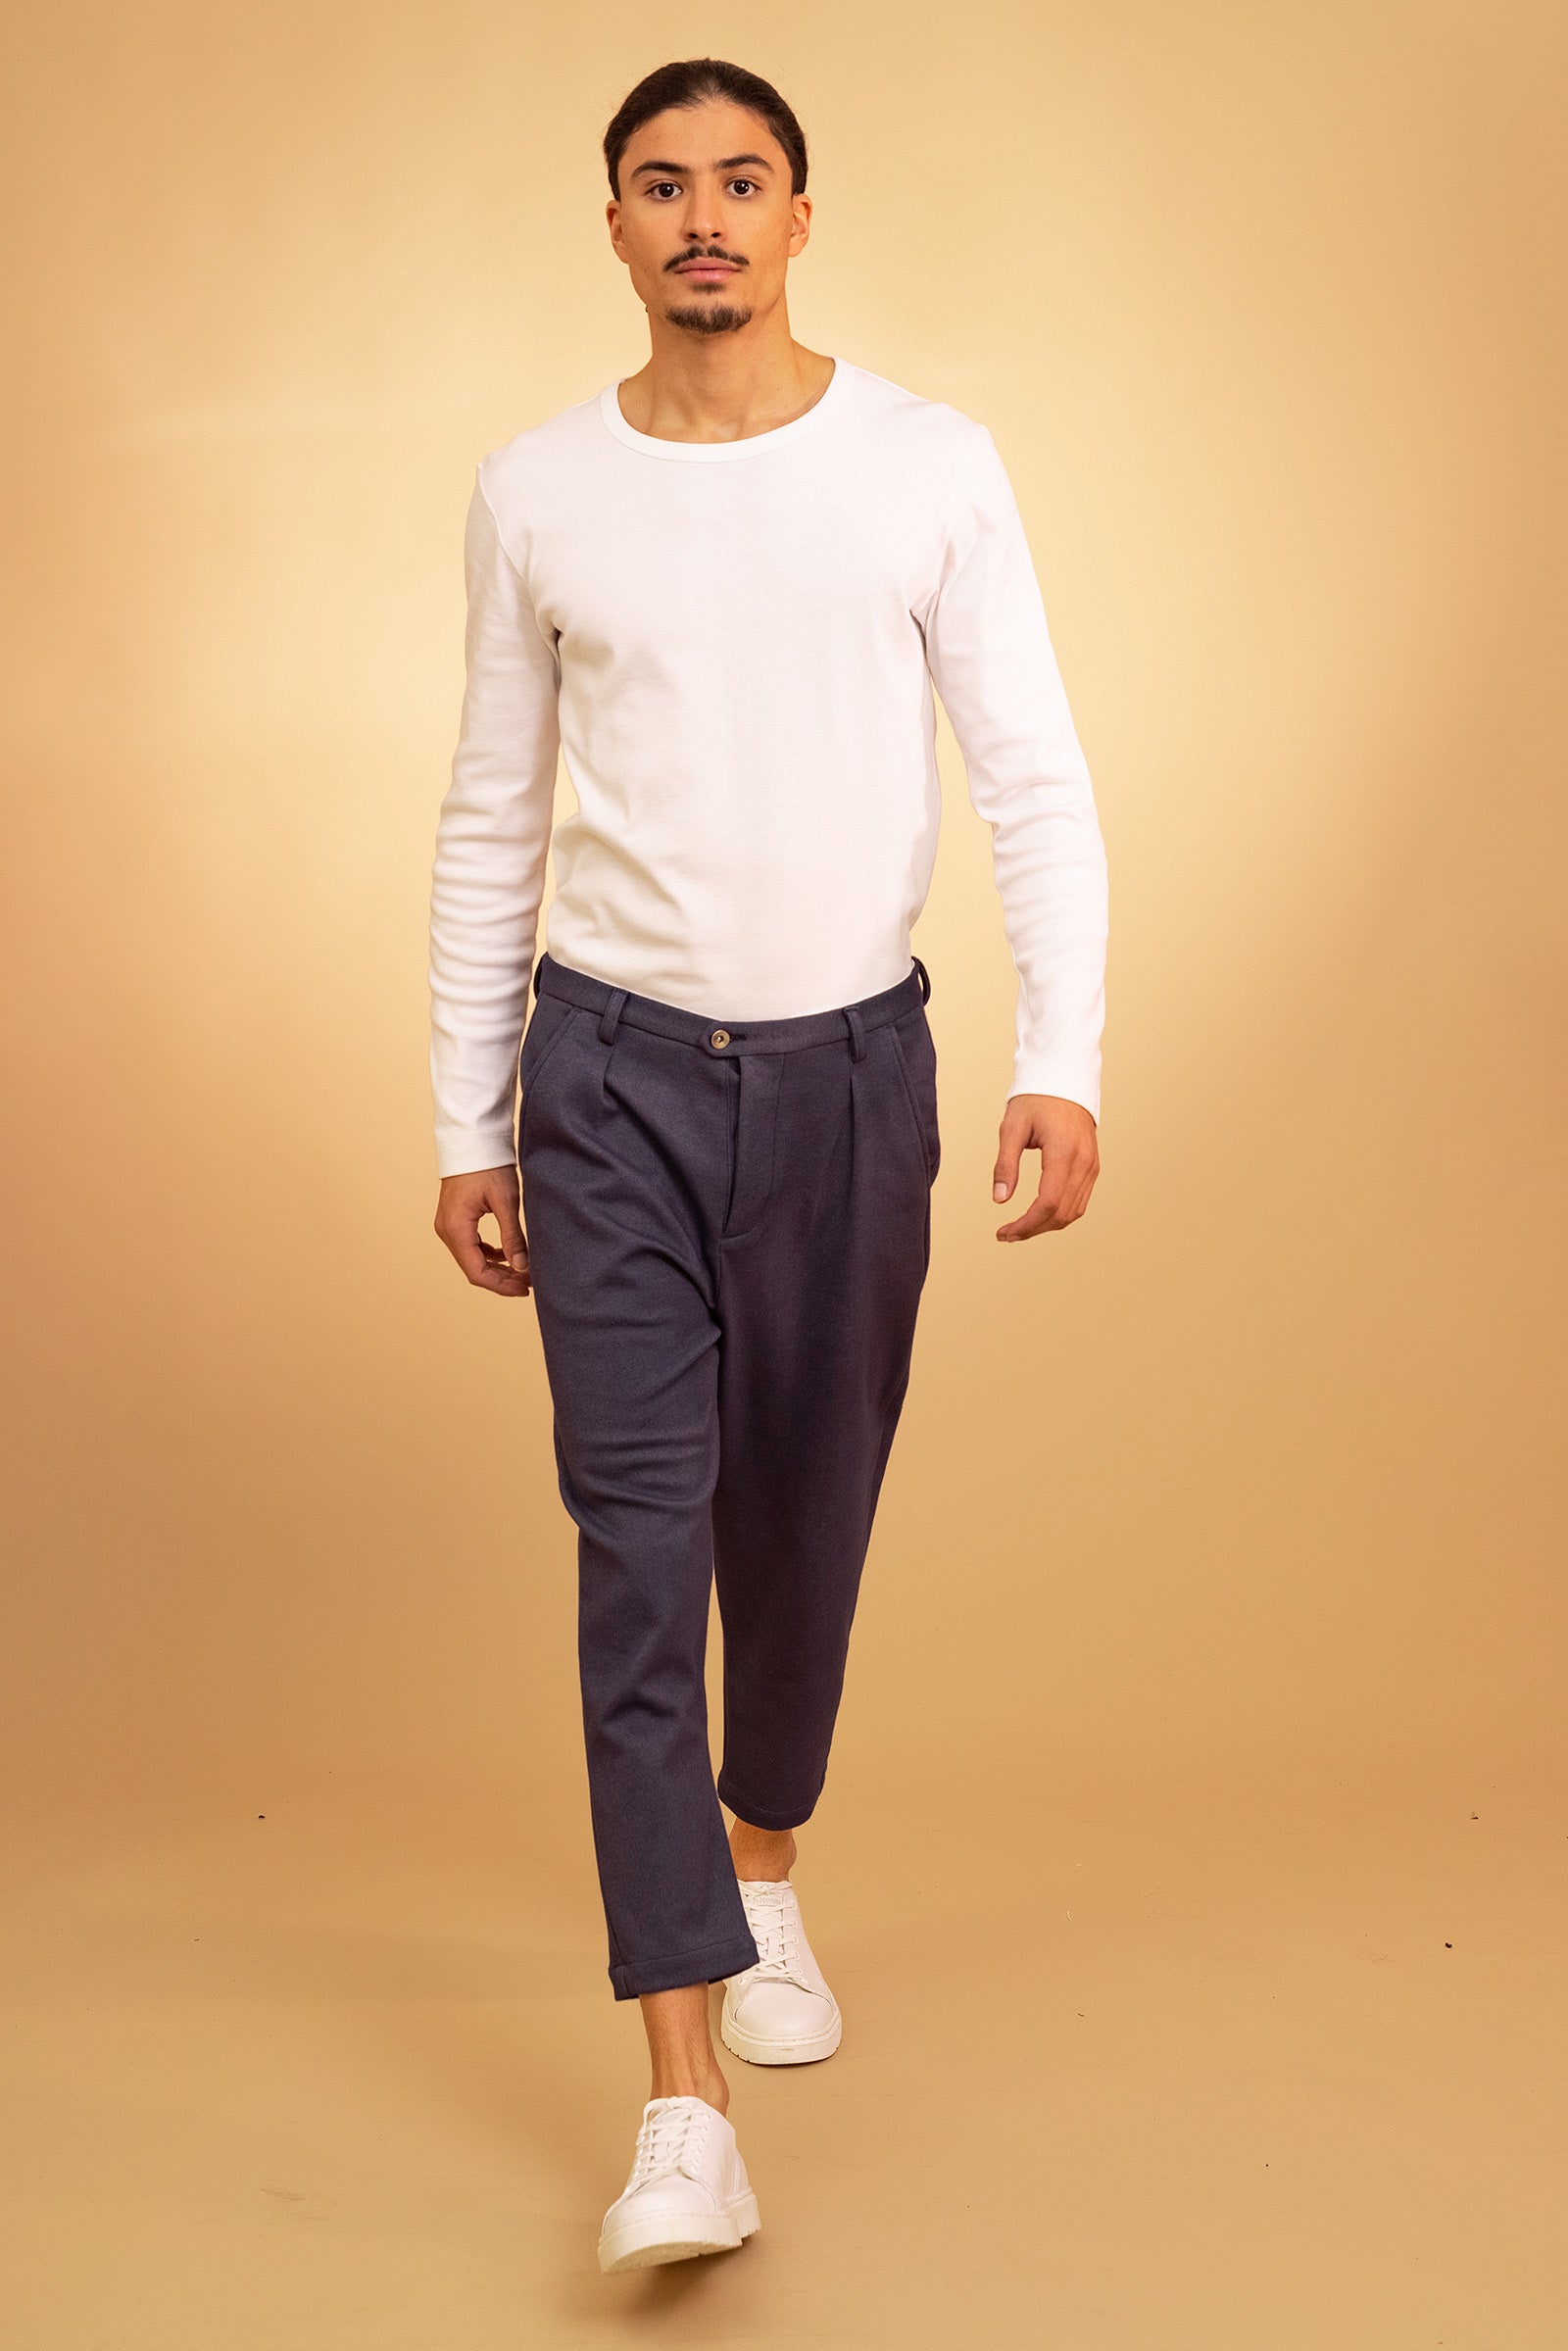 pantalon carotte tissu sportswear coton originalité confort style allure design mode homme élégance hiver misericordia